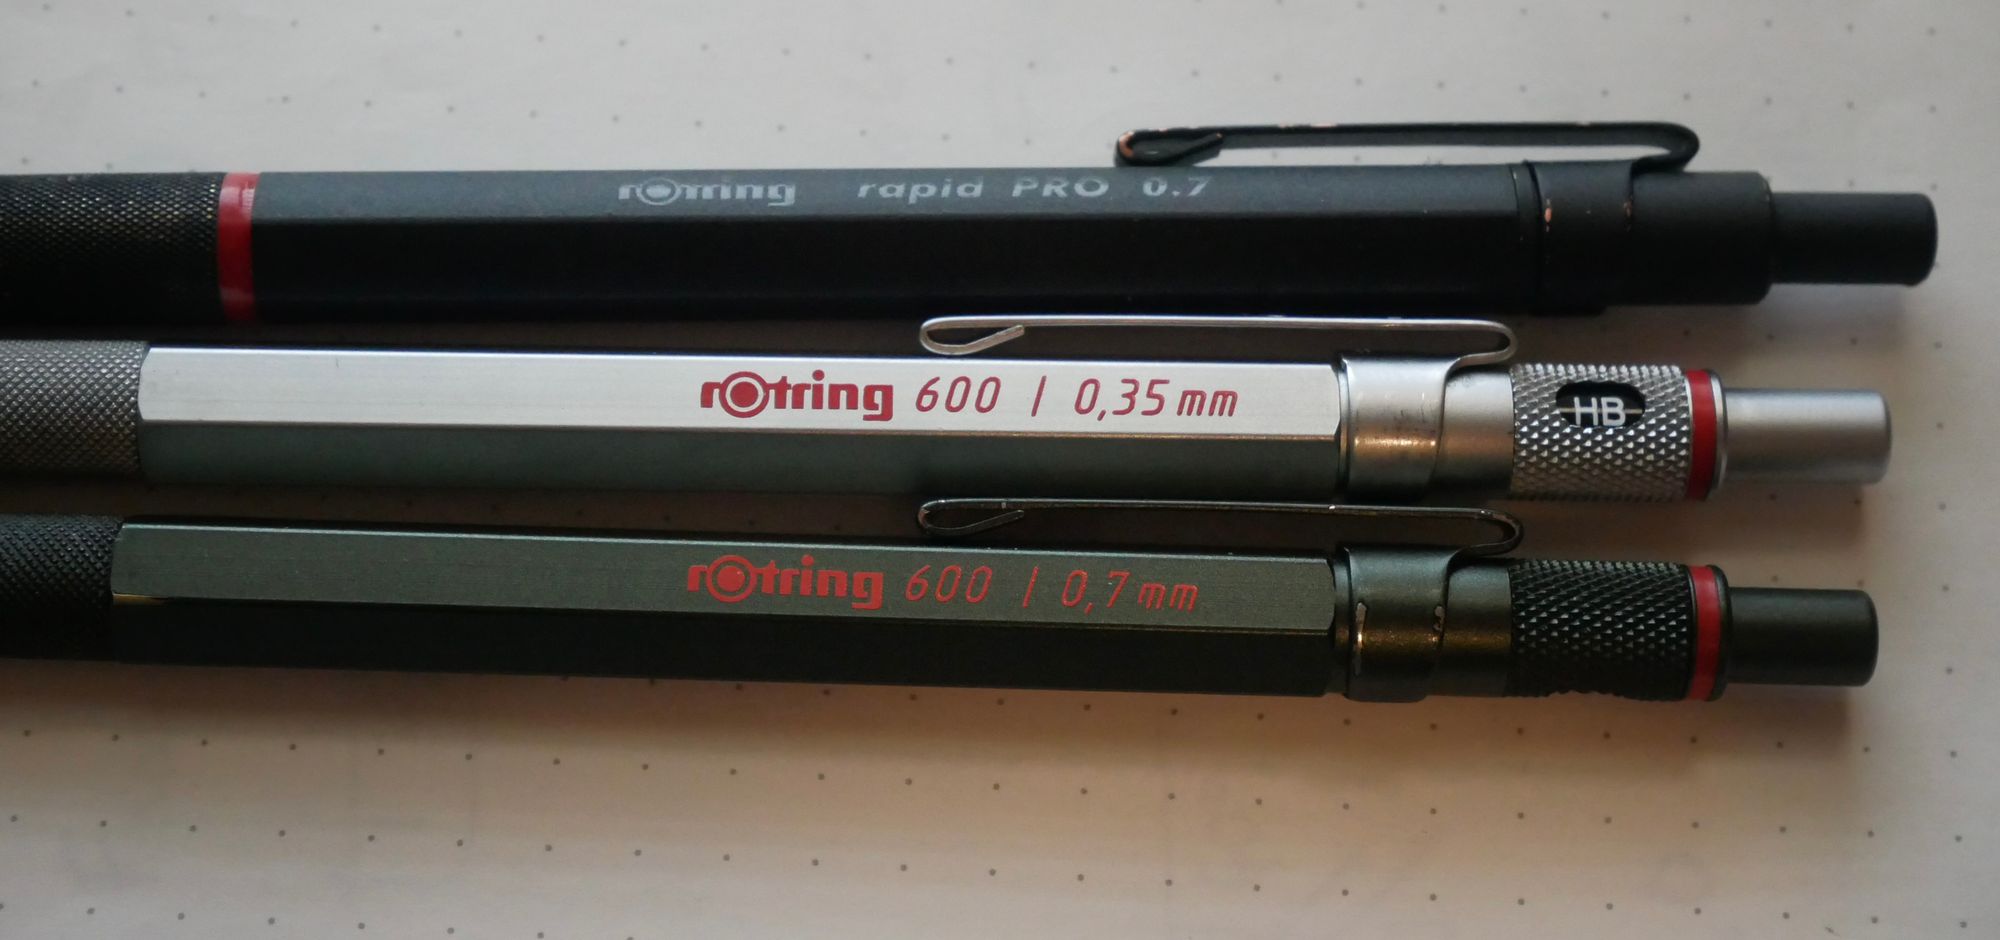 Comparison: Rotring 600 vs. Rotring Rapid Pro